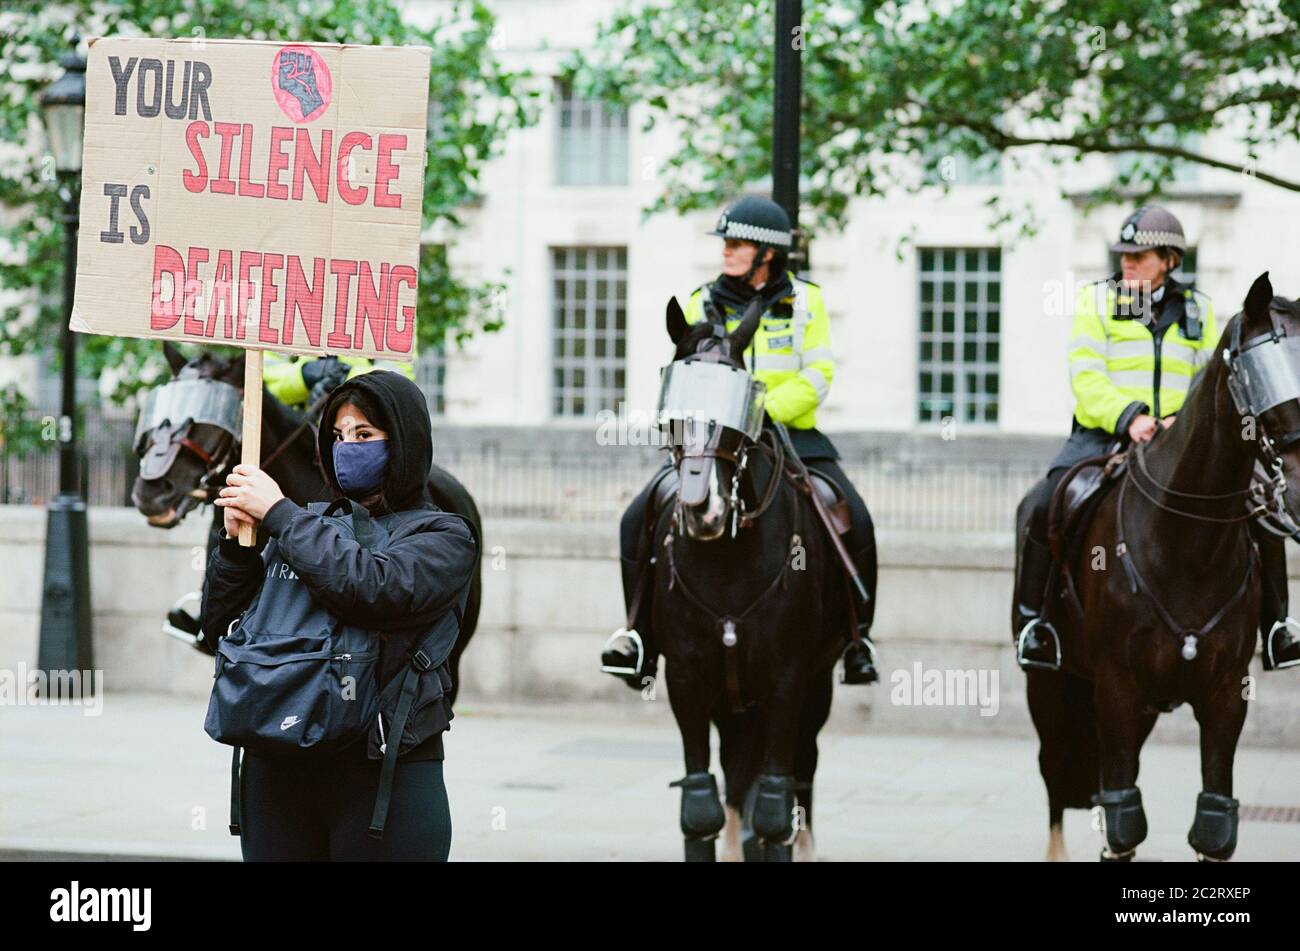 Manifestant devant une ligne de policiers à la manifestation Black Lives Matter à Whitehall, dans le centre de Londres, le 6 juin 2020 Banque D'Images